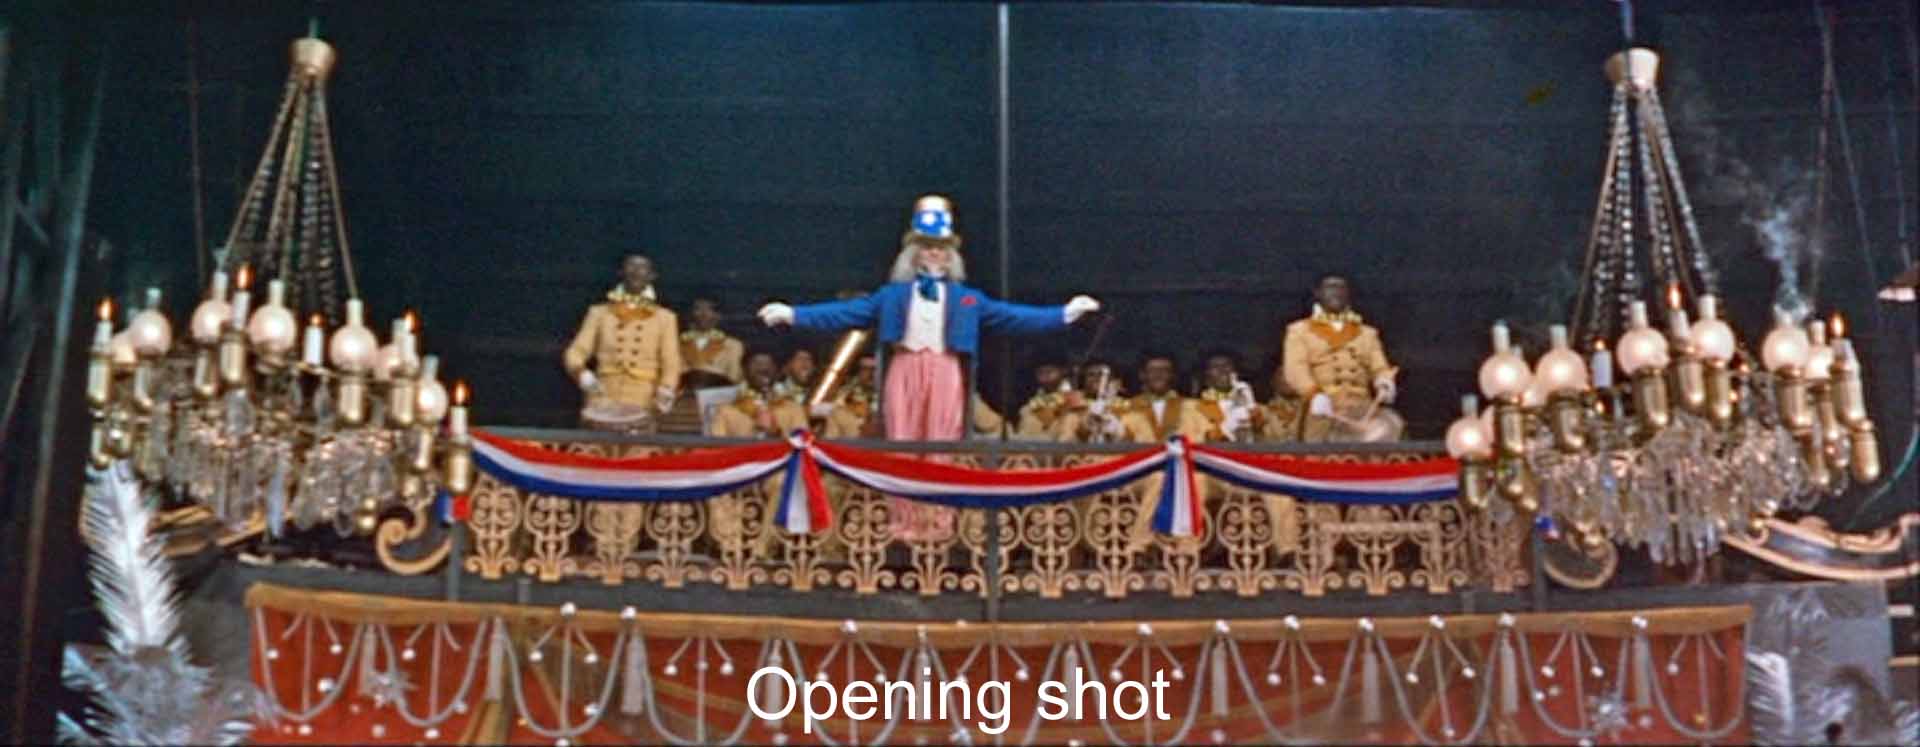 Opening shot